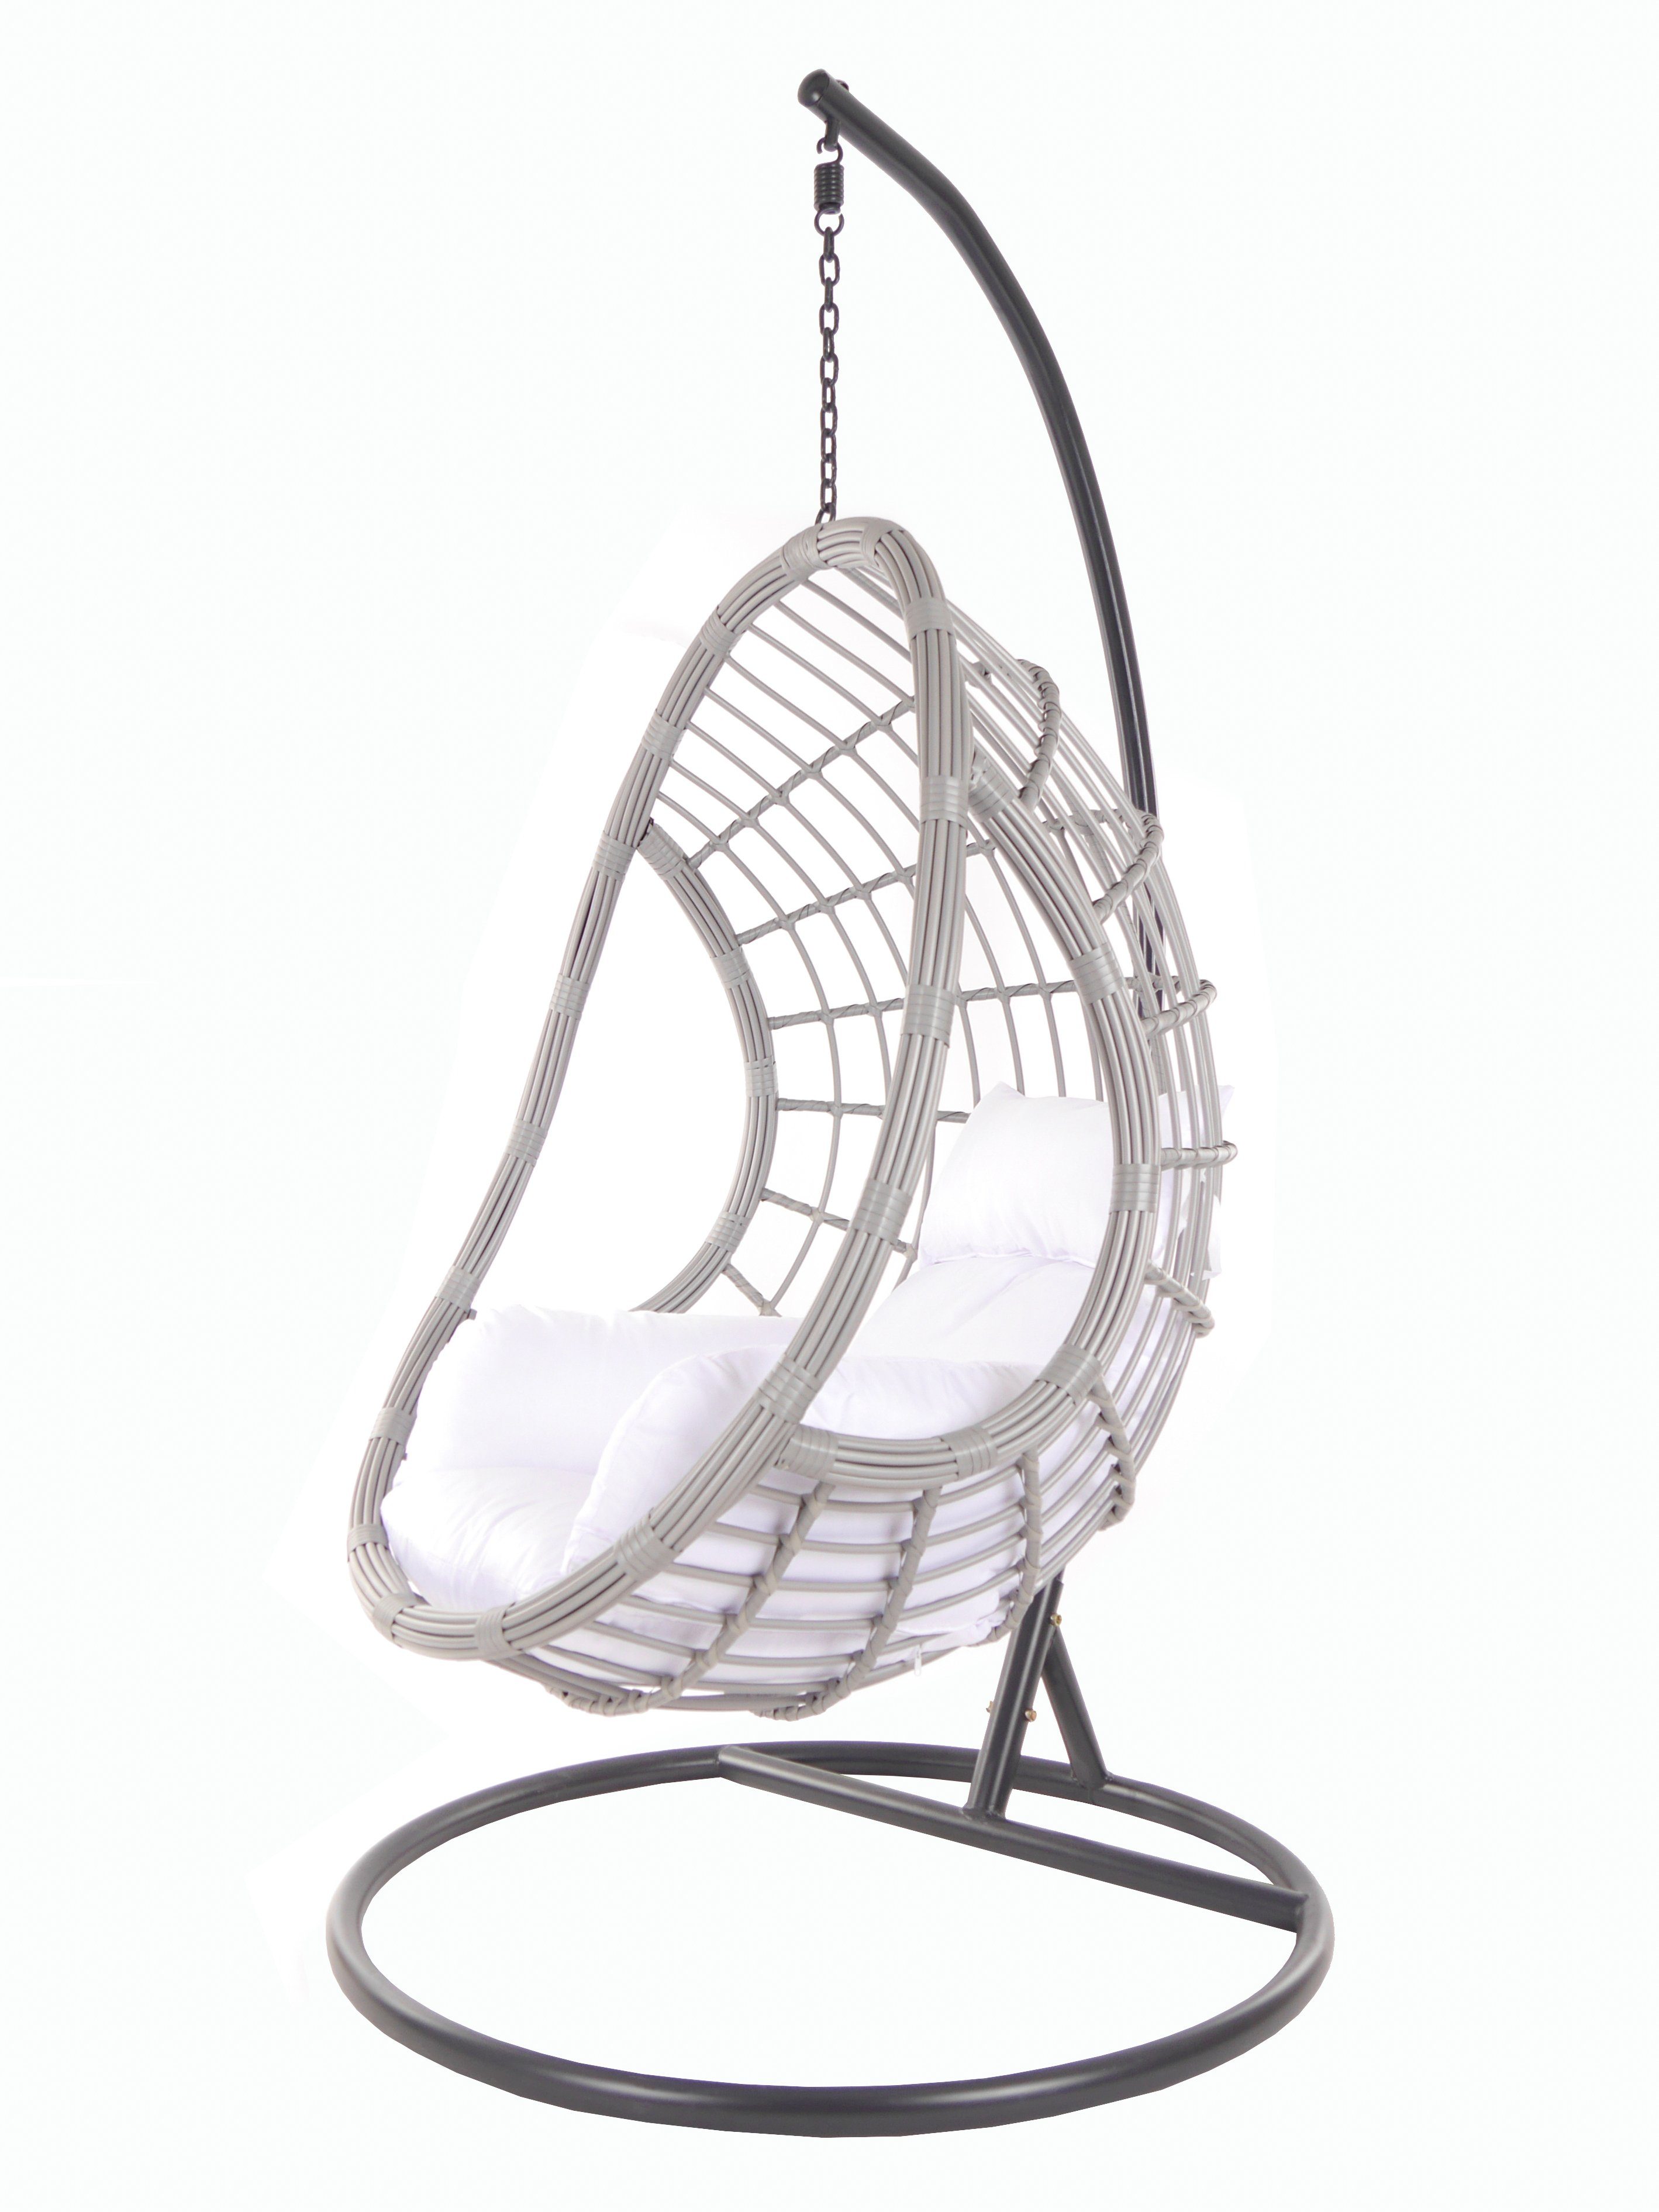 KIDEO Hängesessel PALMANOVA lightgrey, Schwebesessel mit Gestell und Kissen, Swing Chair, Loungemöbel weiß (1000 snow)